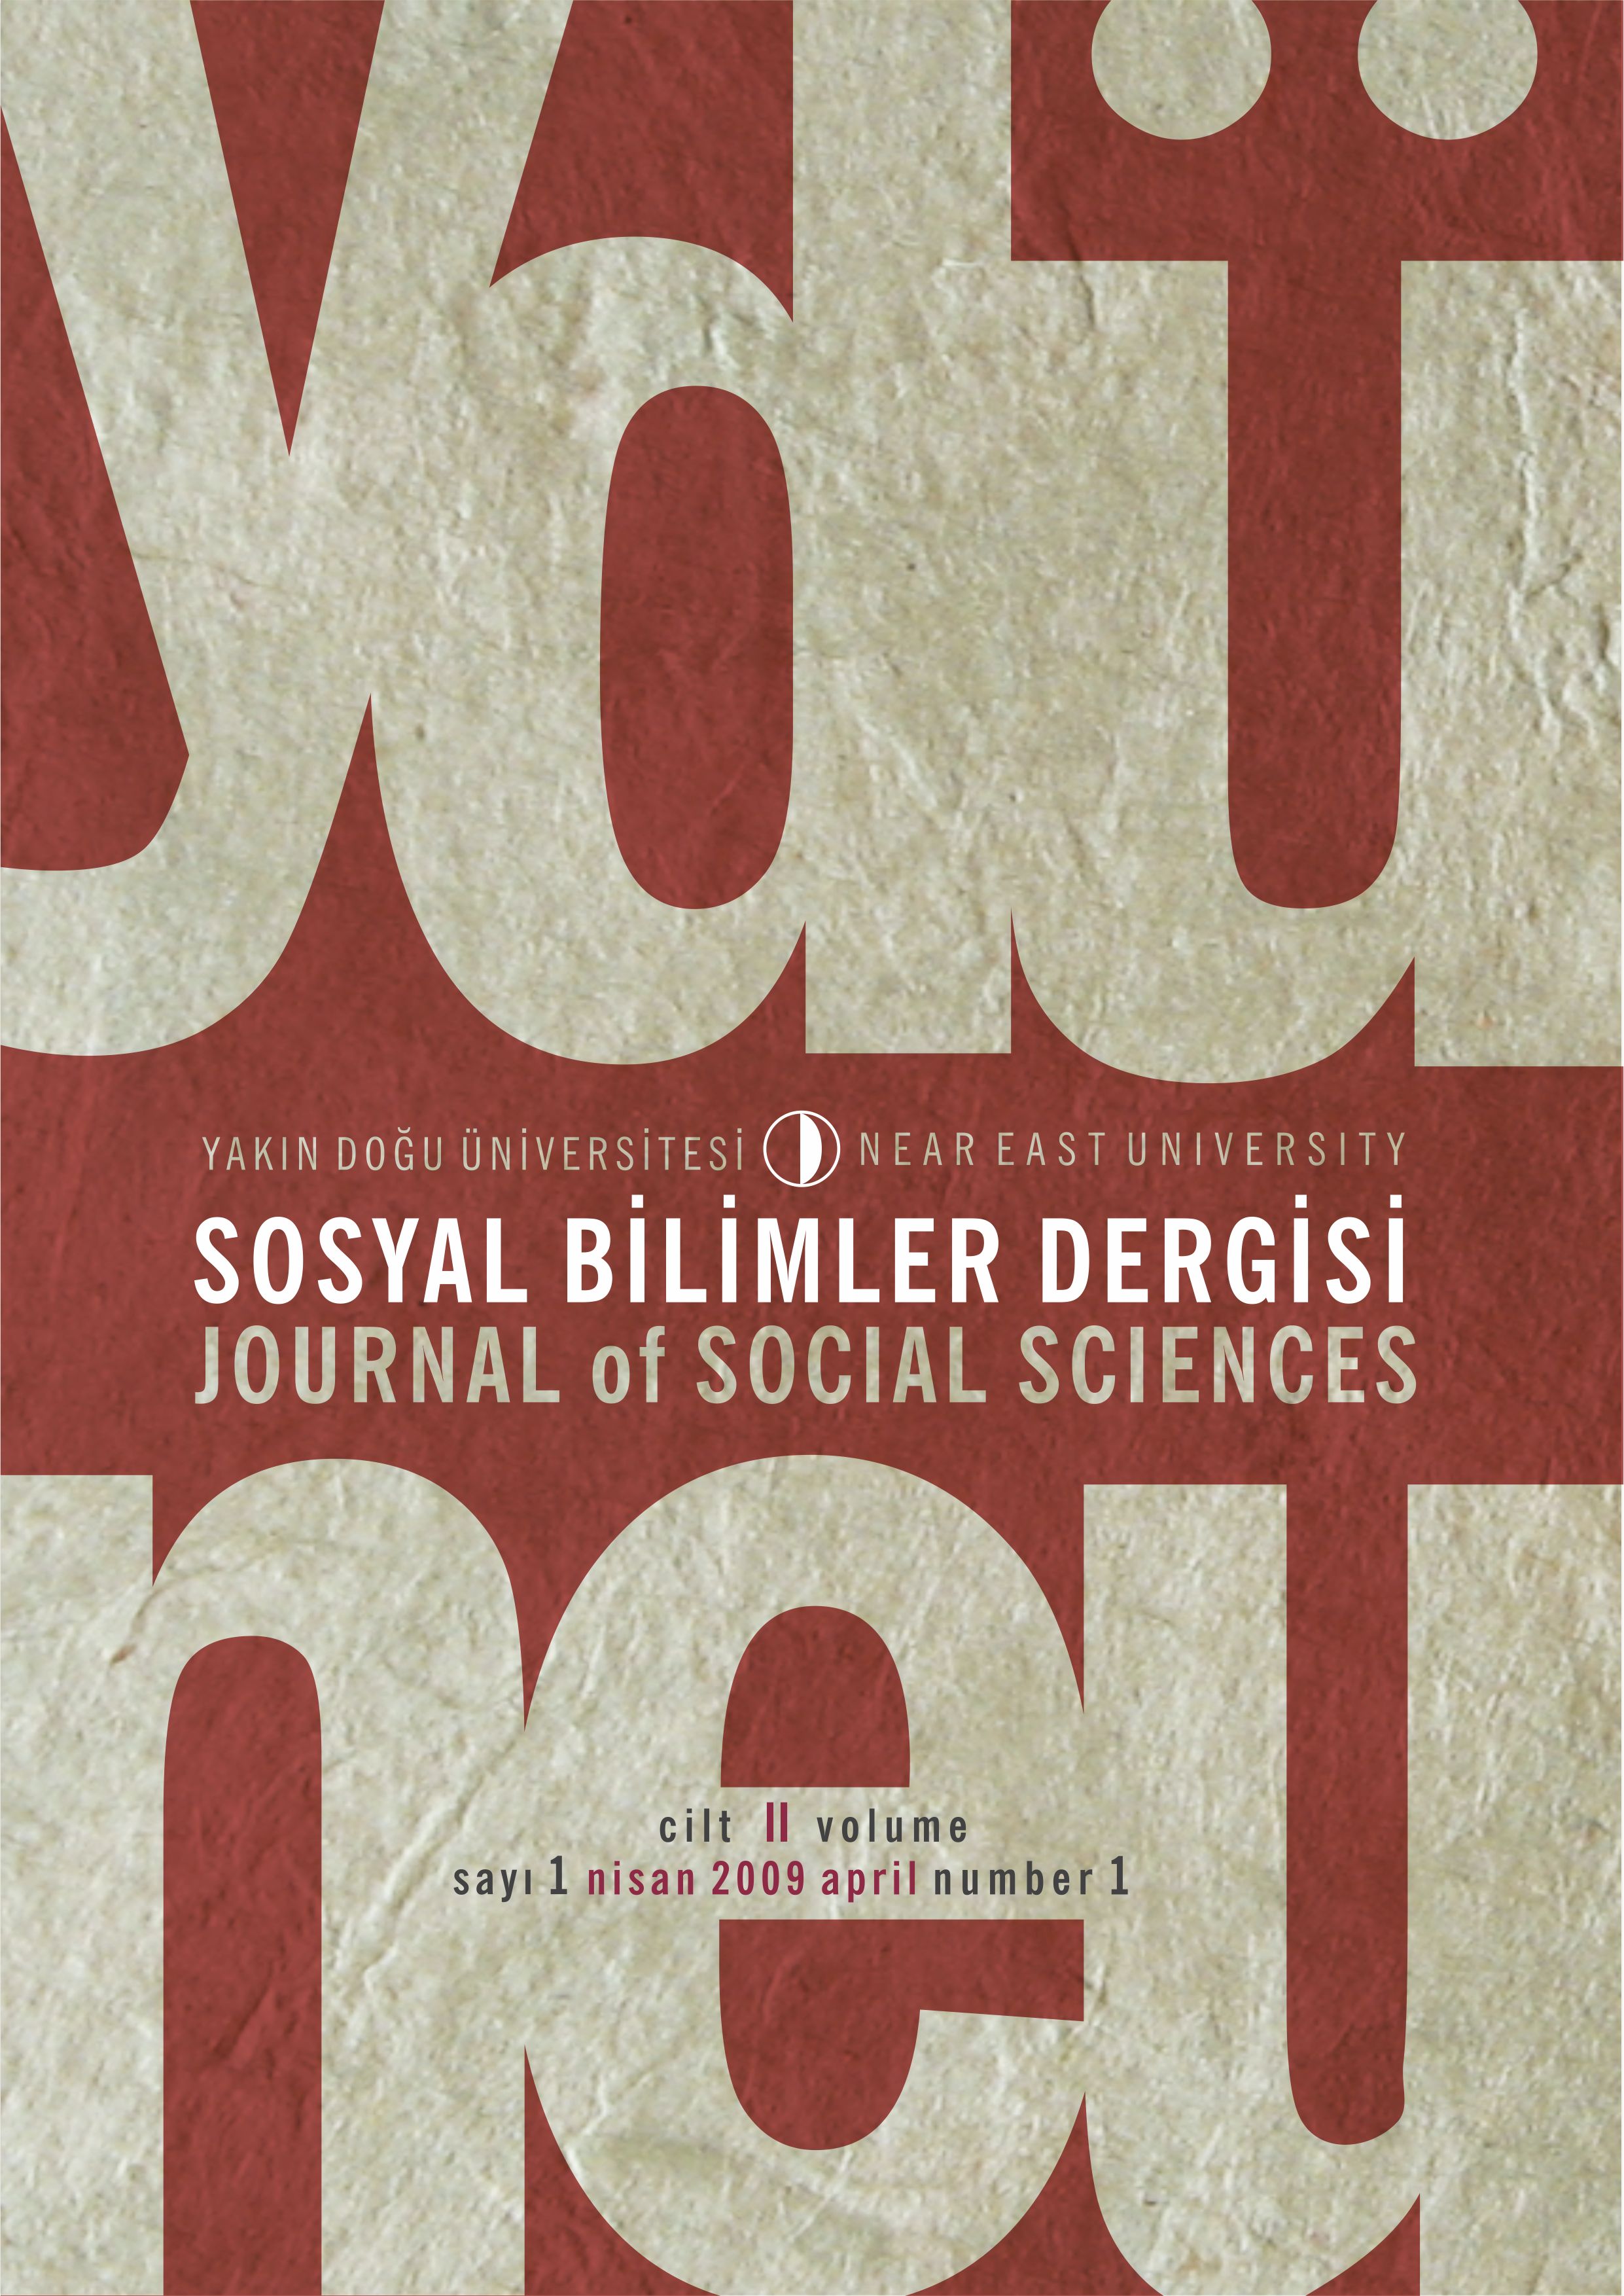 					View Vol. 2 No. 1 (2009): Yakın Doğu Üniversitesi Sosyal Bilimler Dergisi
				